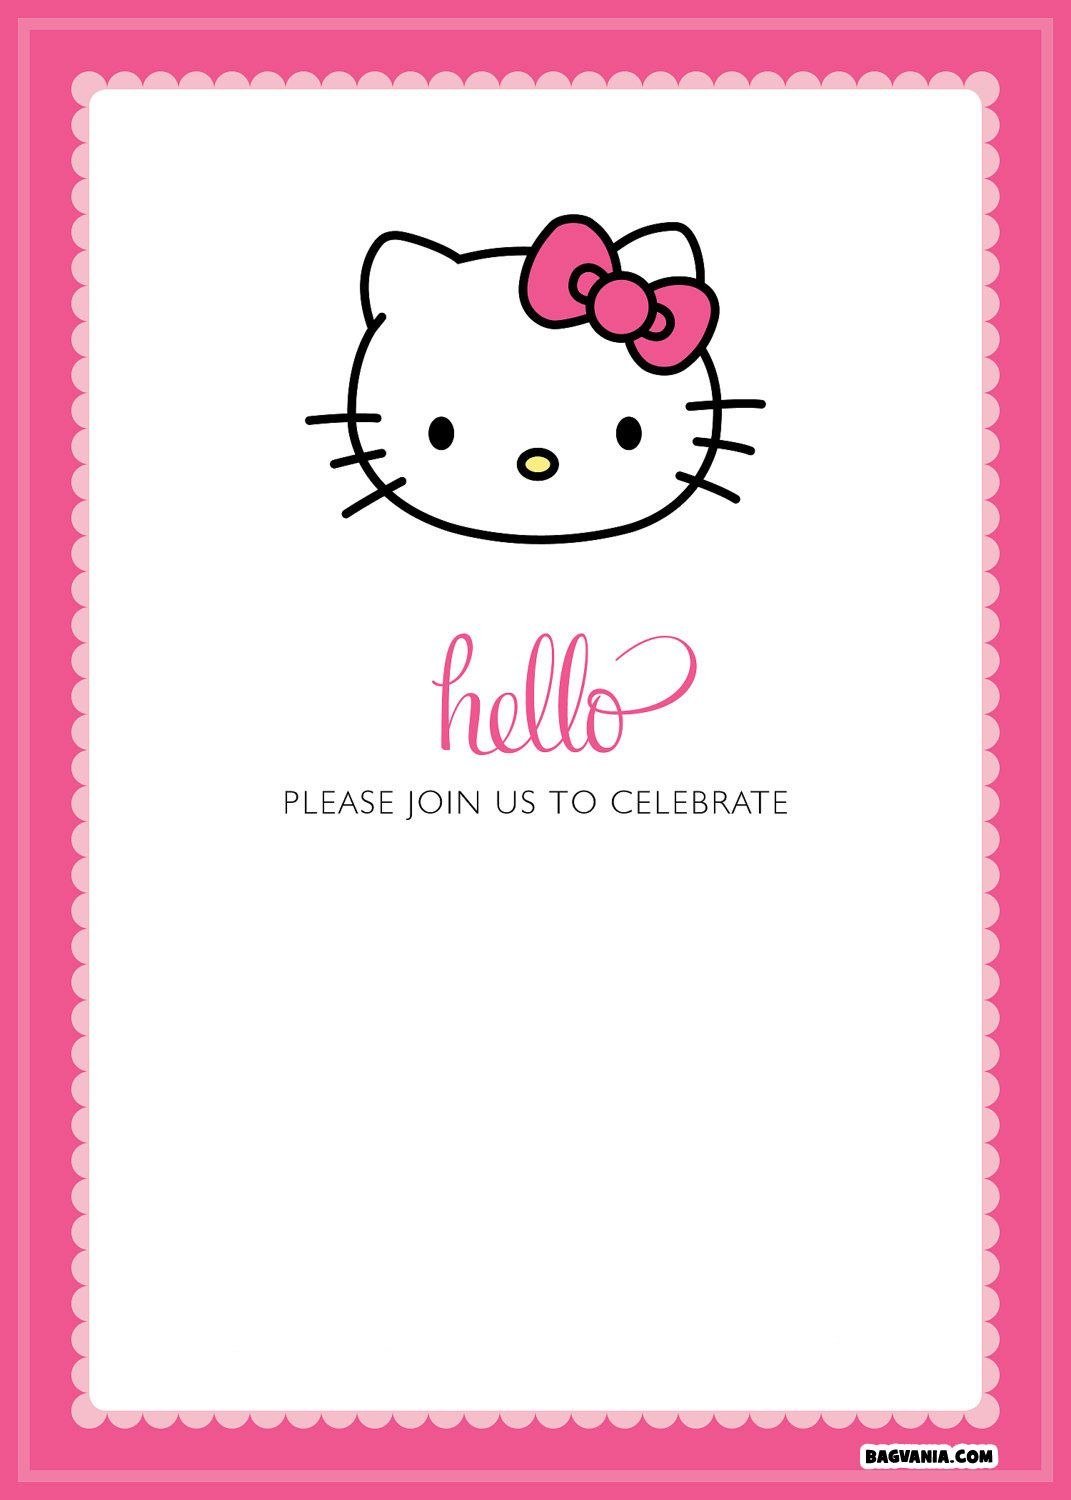 Free Printable Hello Kitty Birthday Invitations – Bagvania Free for Hello Kitty Birthday Card Template Free